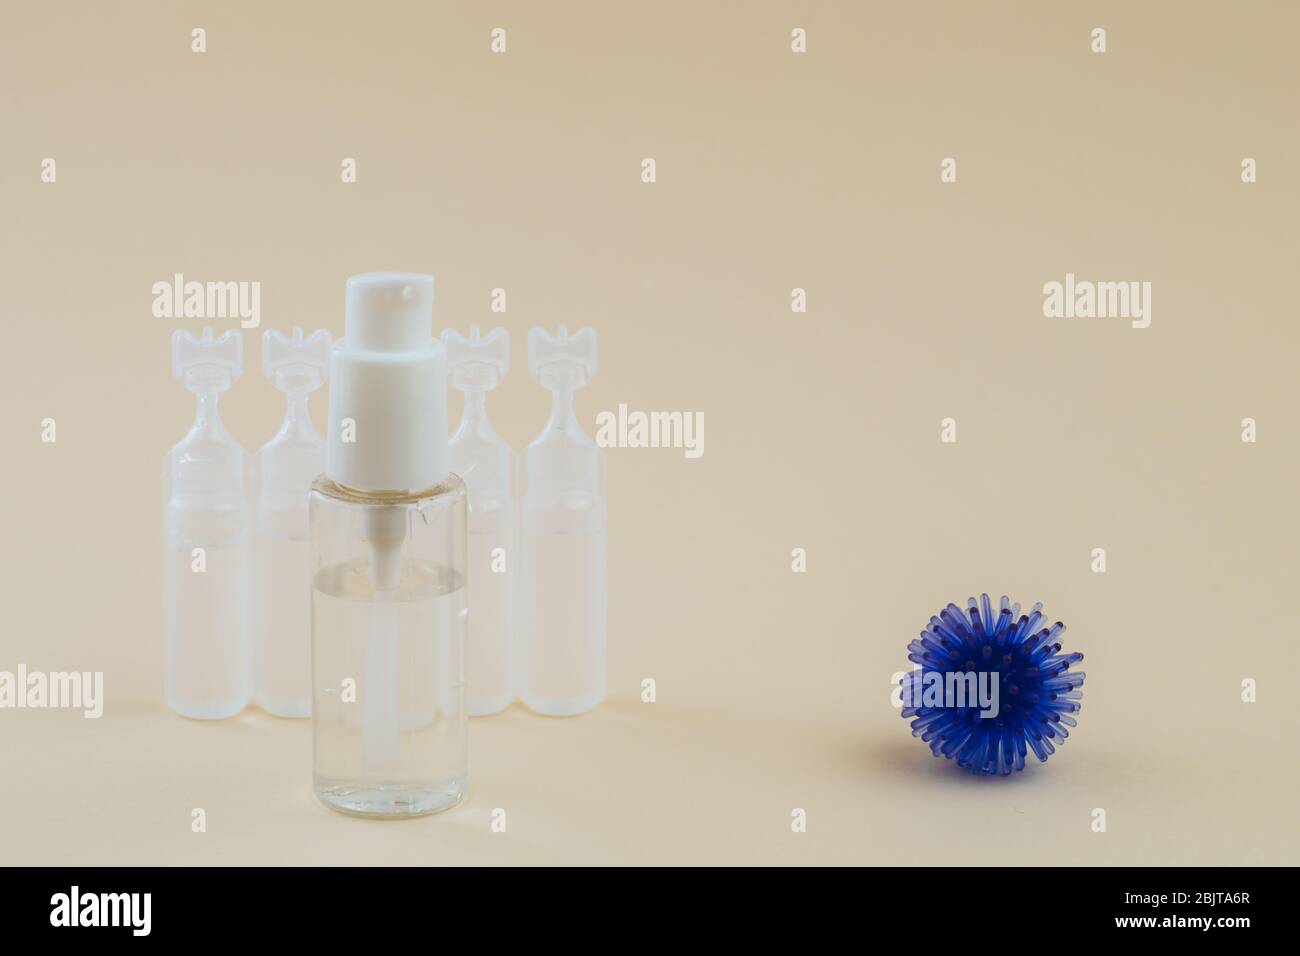 Modèle abstrait de coronavirus, ampoule avec médicament et flacon avec gel antibactérien pour les mains sur fond beige. Concept d'hygiène. Banque D'Images